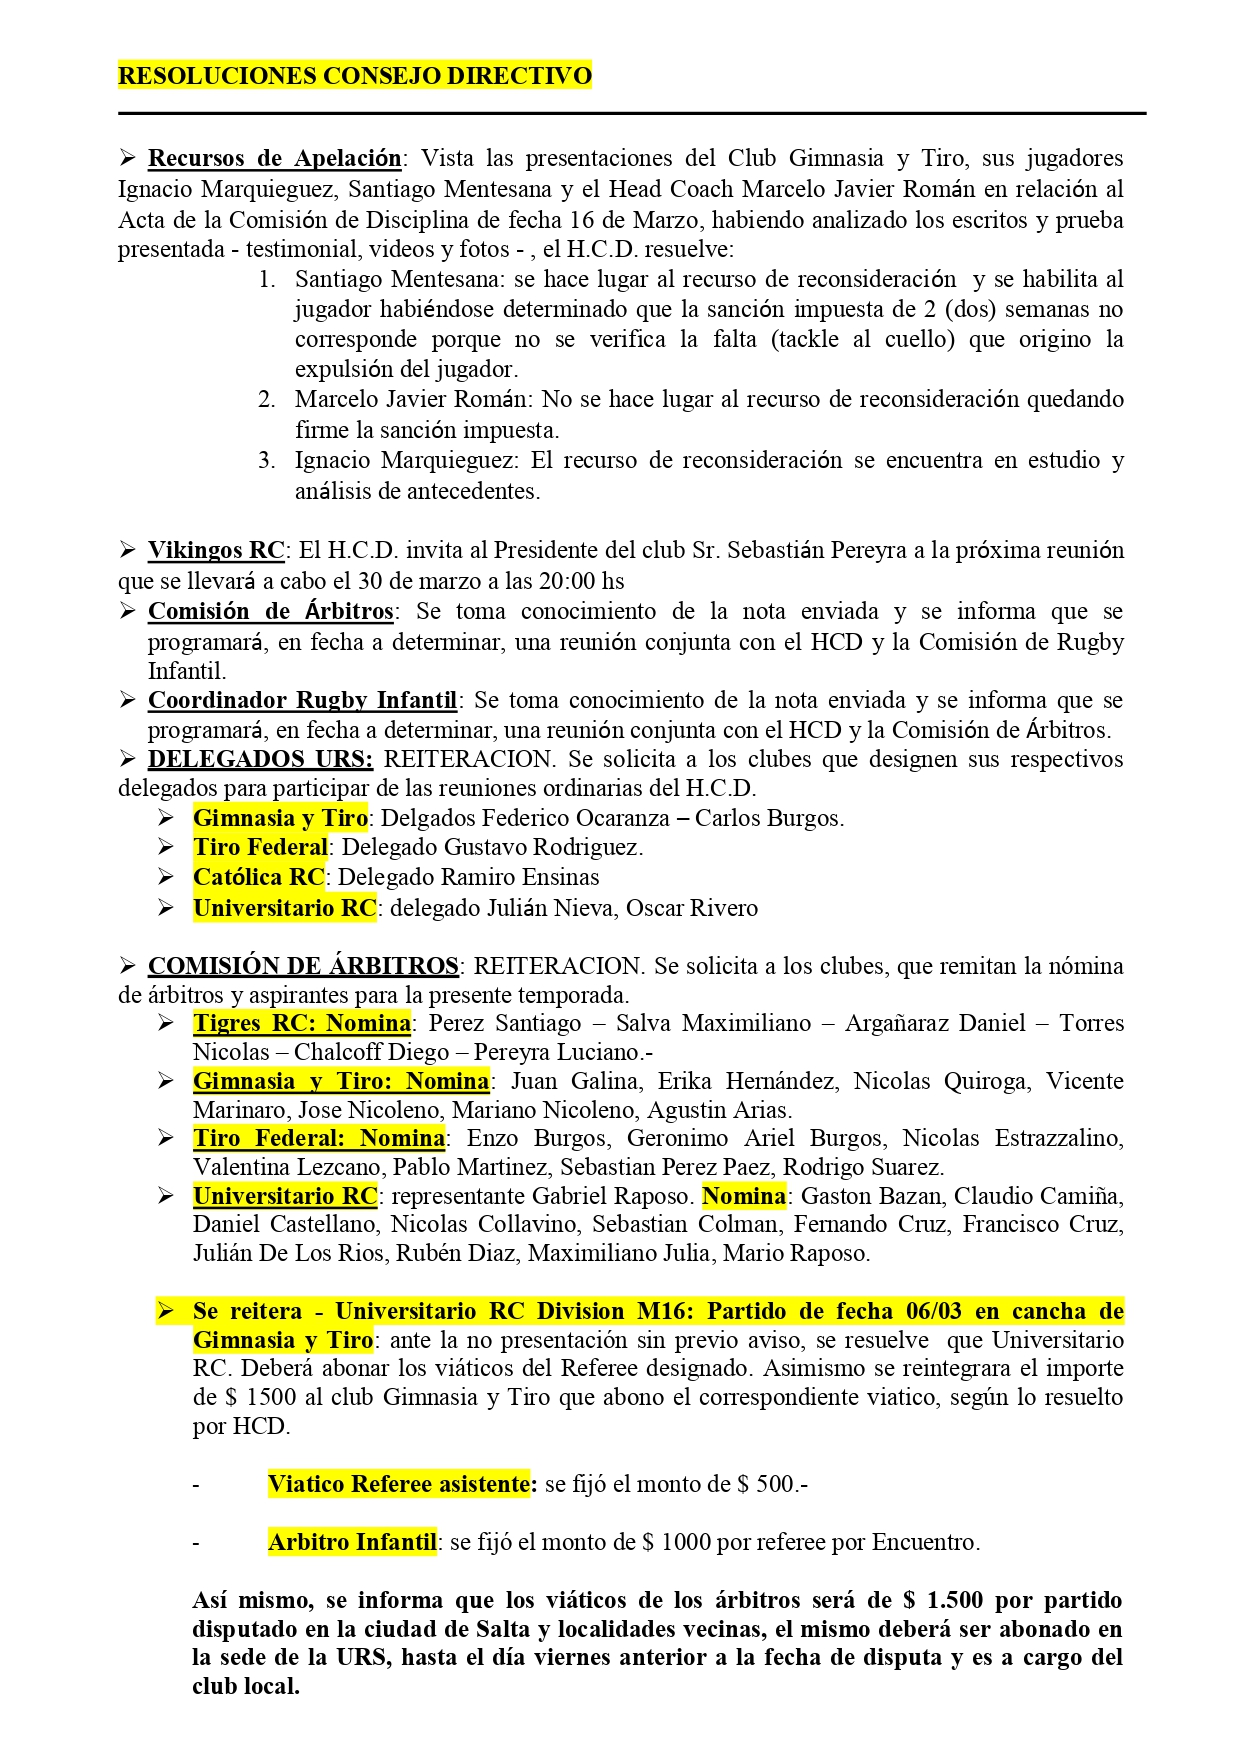 Boletín Oficial de la Unión de Rugby de Salta.